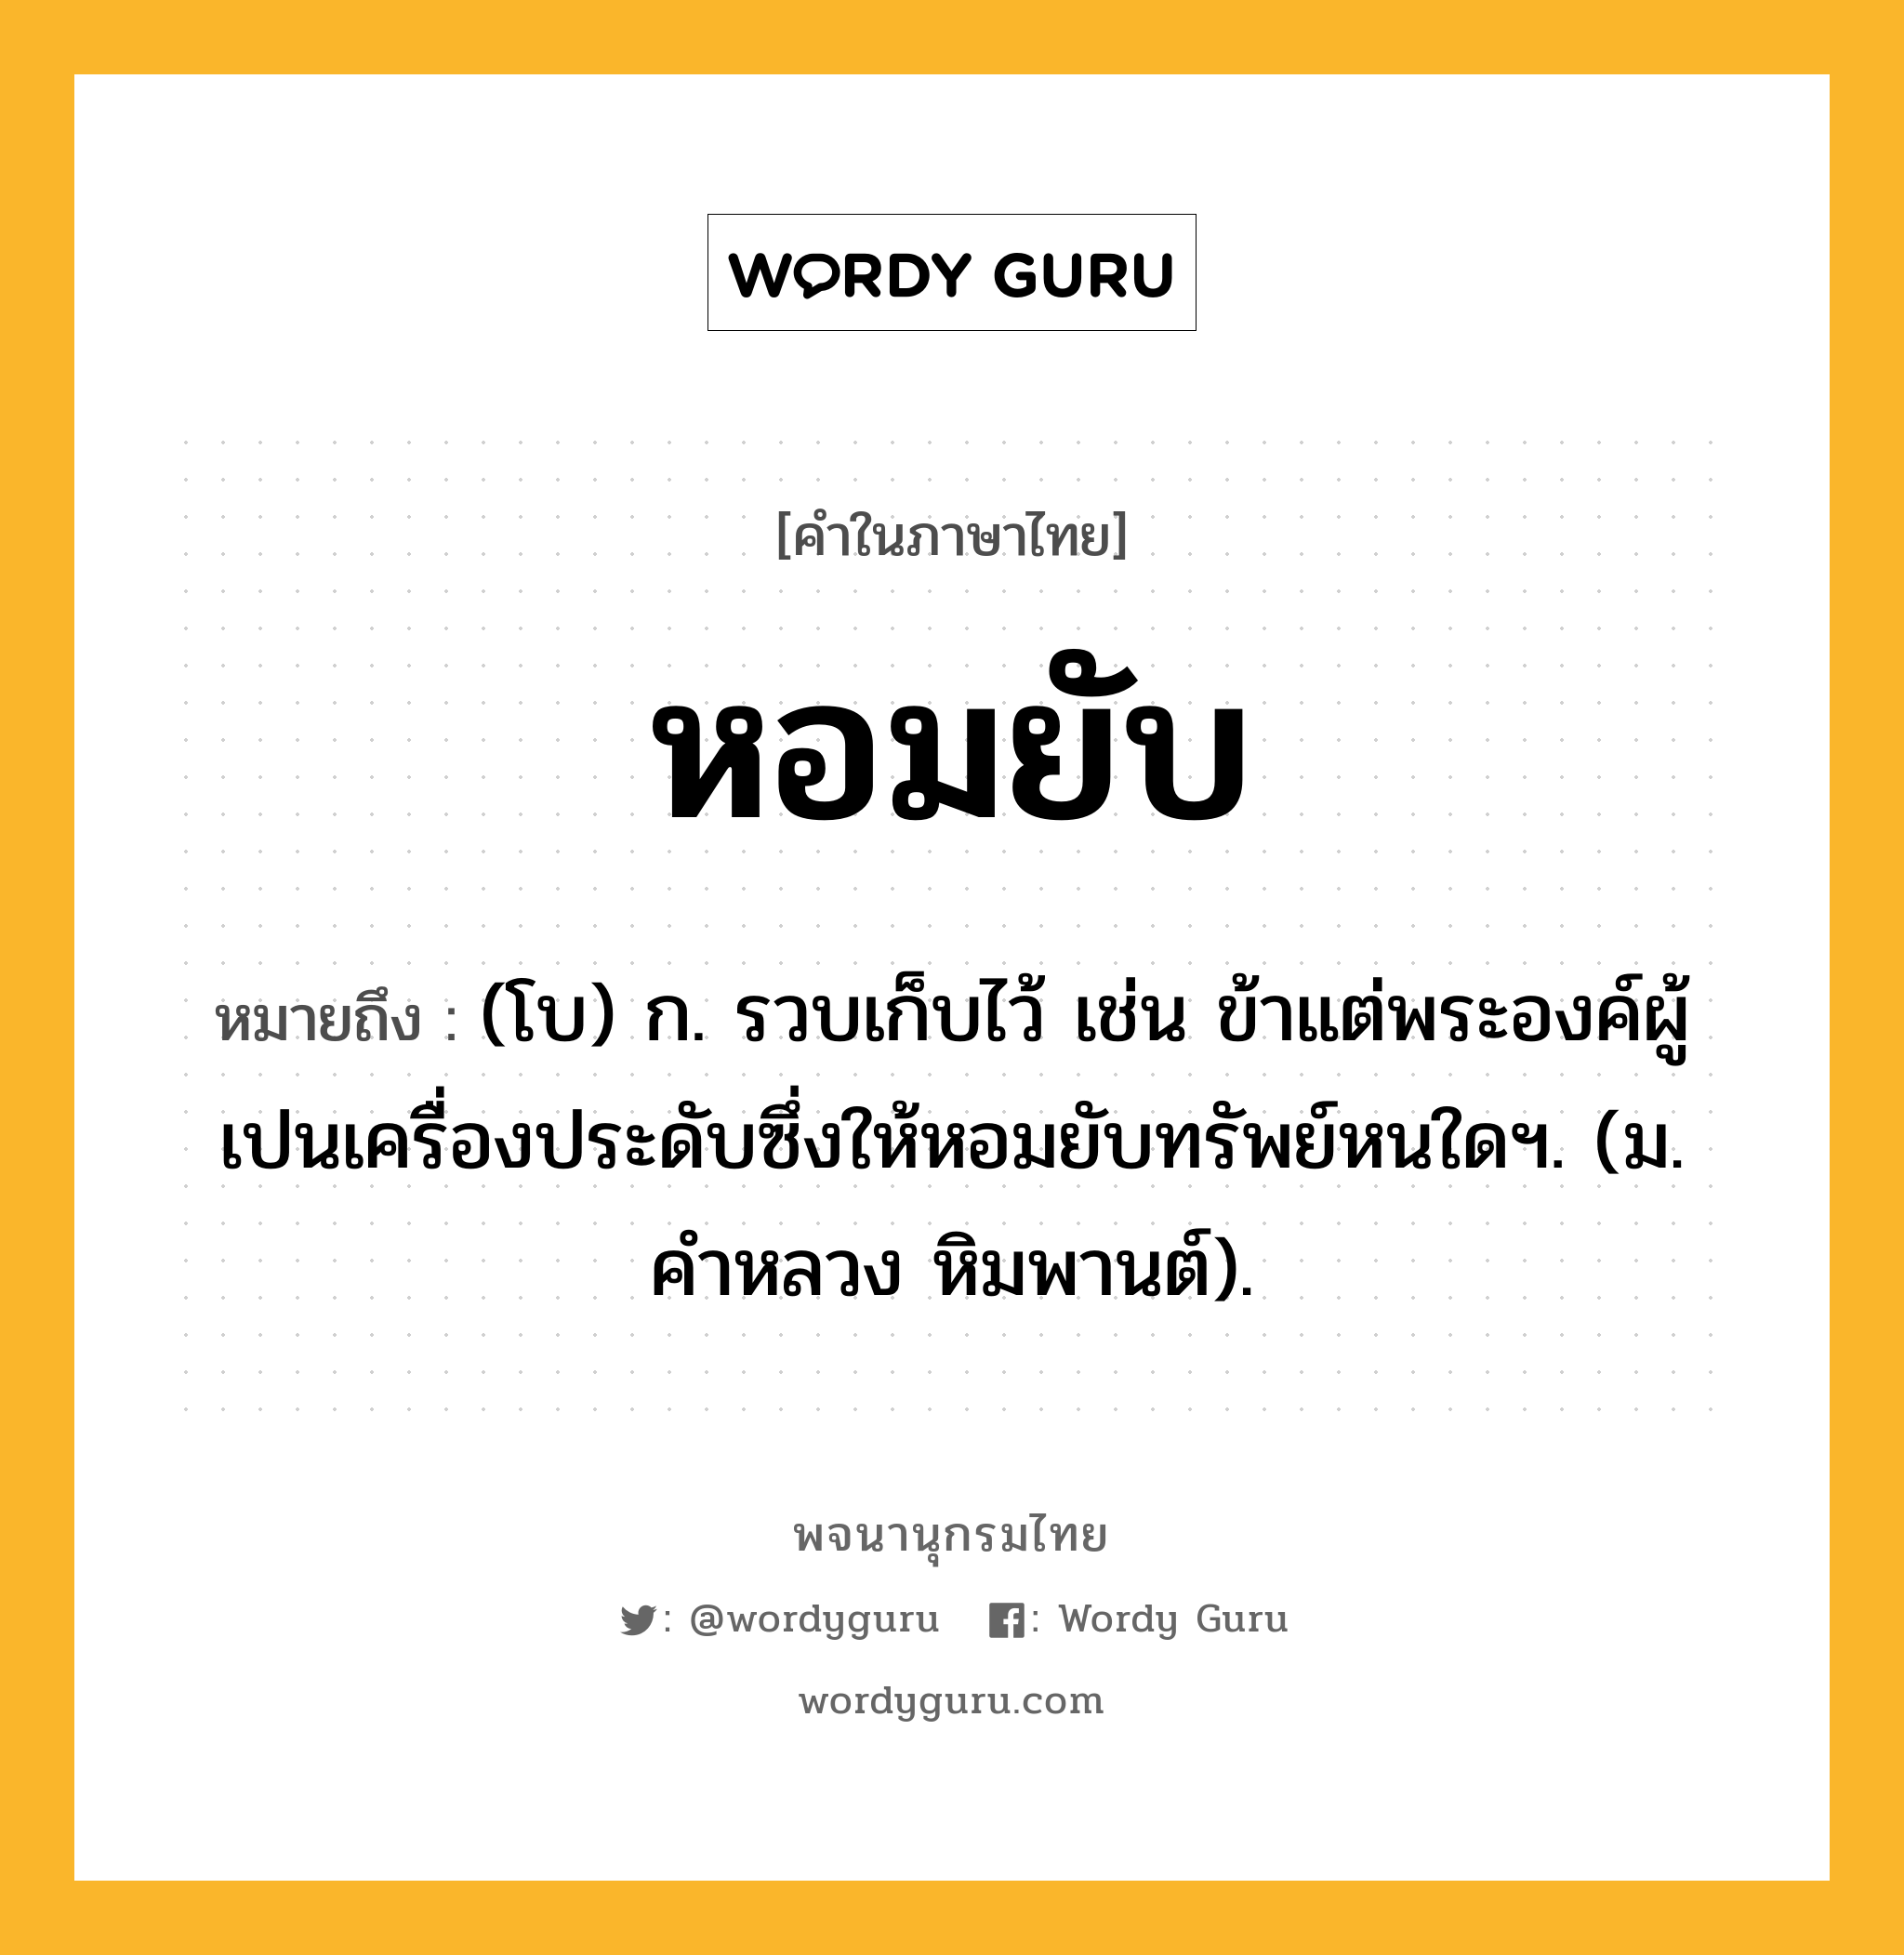 หอมยับ หมายถึงอะไร?, คำในภาษาไทย หอมยับ หมายถึง (โบ) ก. รวบเก็บไว้ เช่น ข้าแต่พระองค์ผู้เปนเครื่องประดับซึ่งให้หอมยับทรัพย์หนใดฯ. (ม. คำหลวง หิมพานต์).